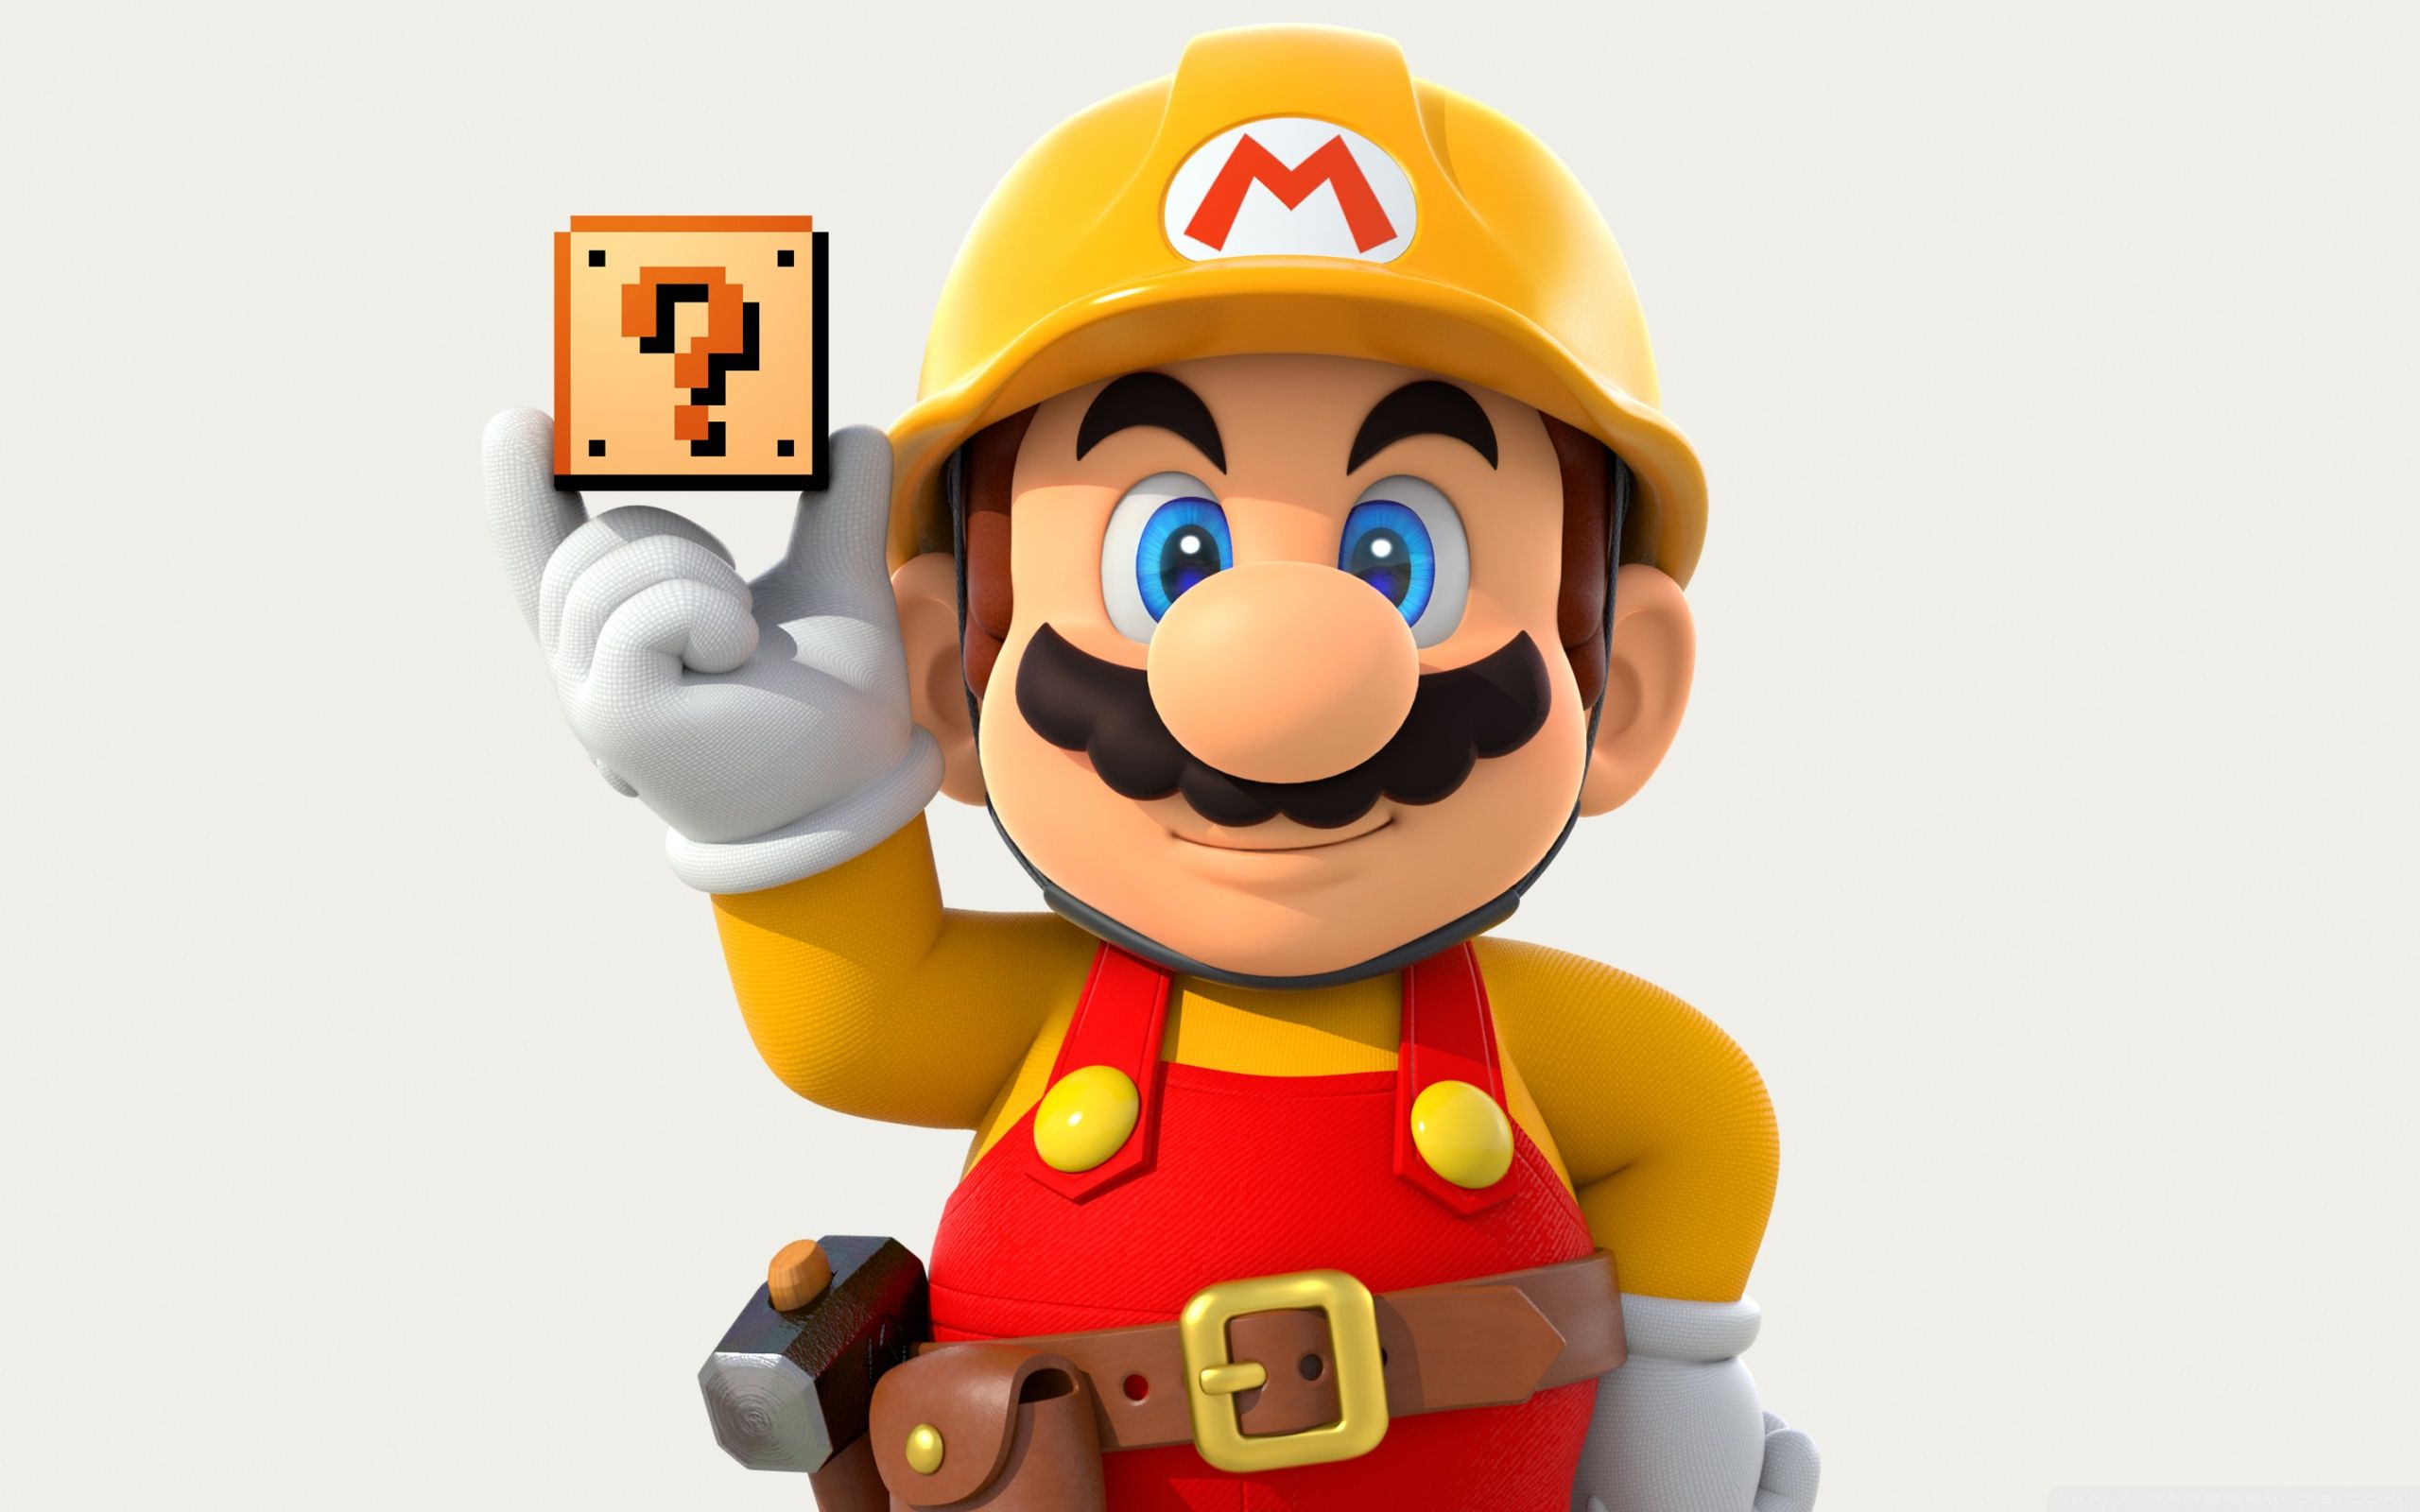 Bí ẩn làng game: Anh chàng Mario thực sự bao nhiêu tuổi?